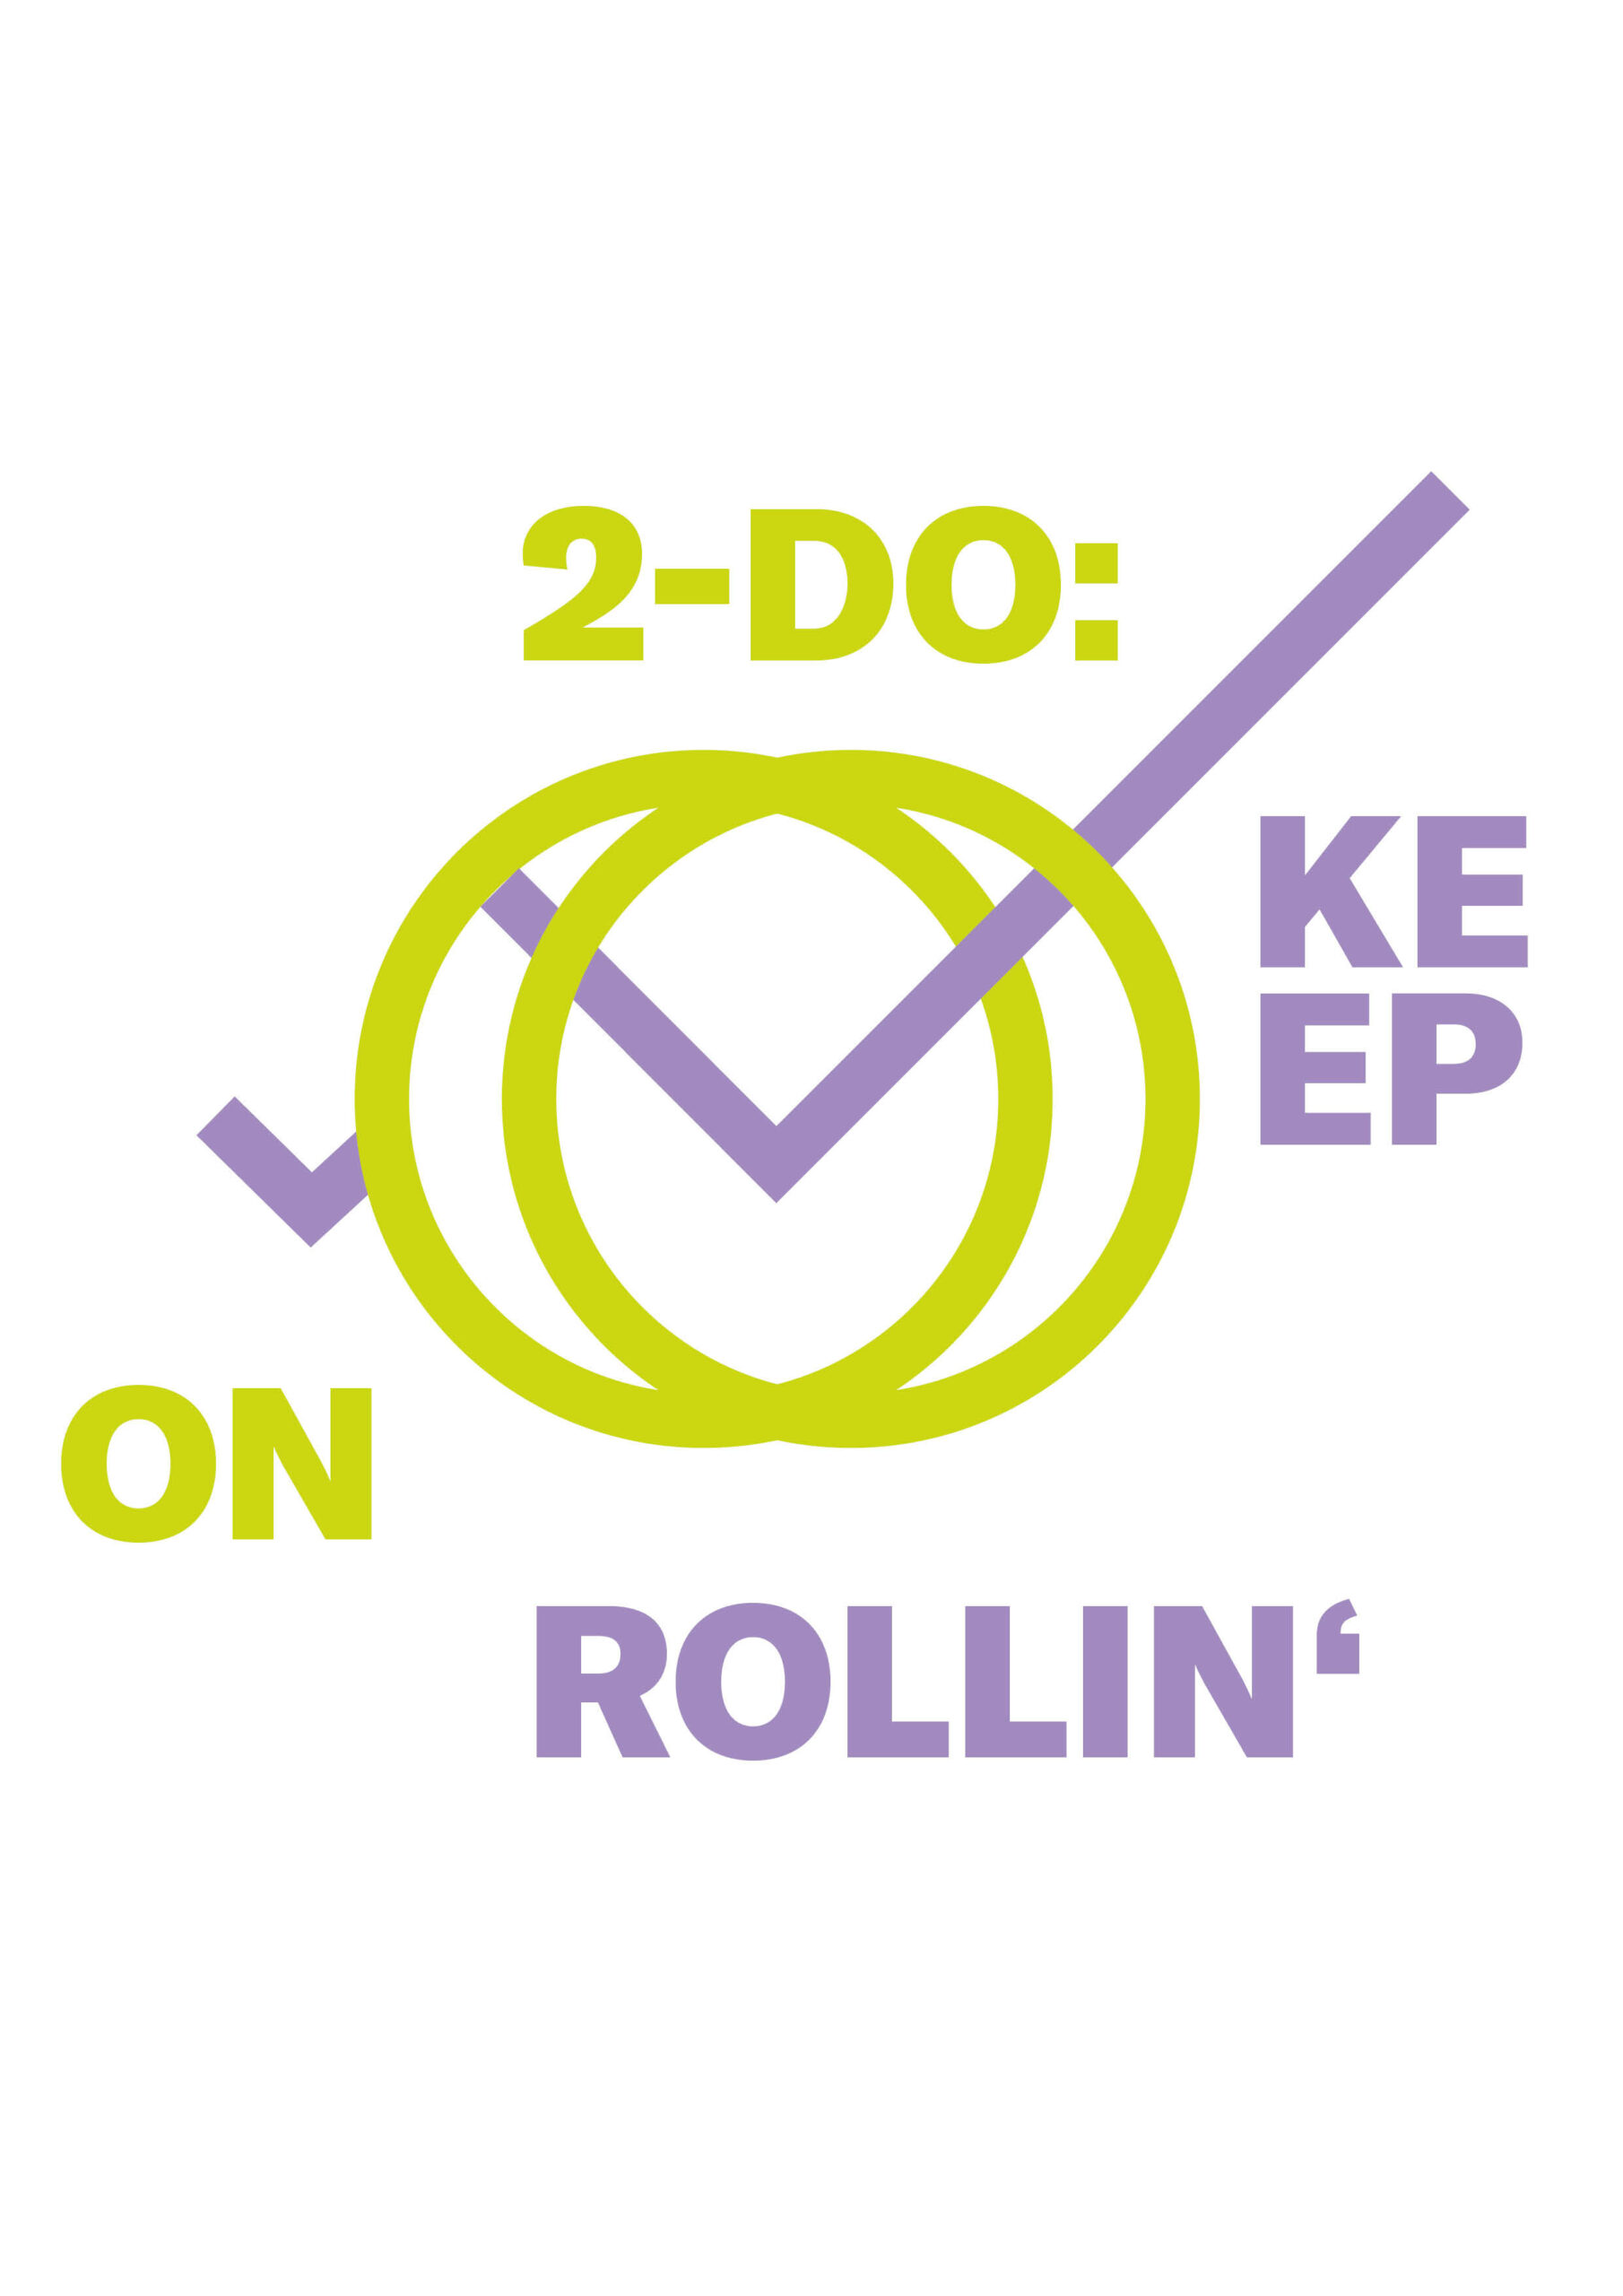 Die Zeichnung eines Rollstuhls mit dem Spruch: 2-Do: Keep on rollin'